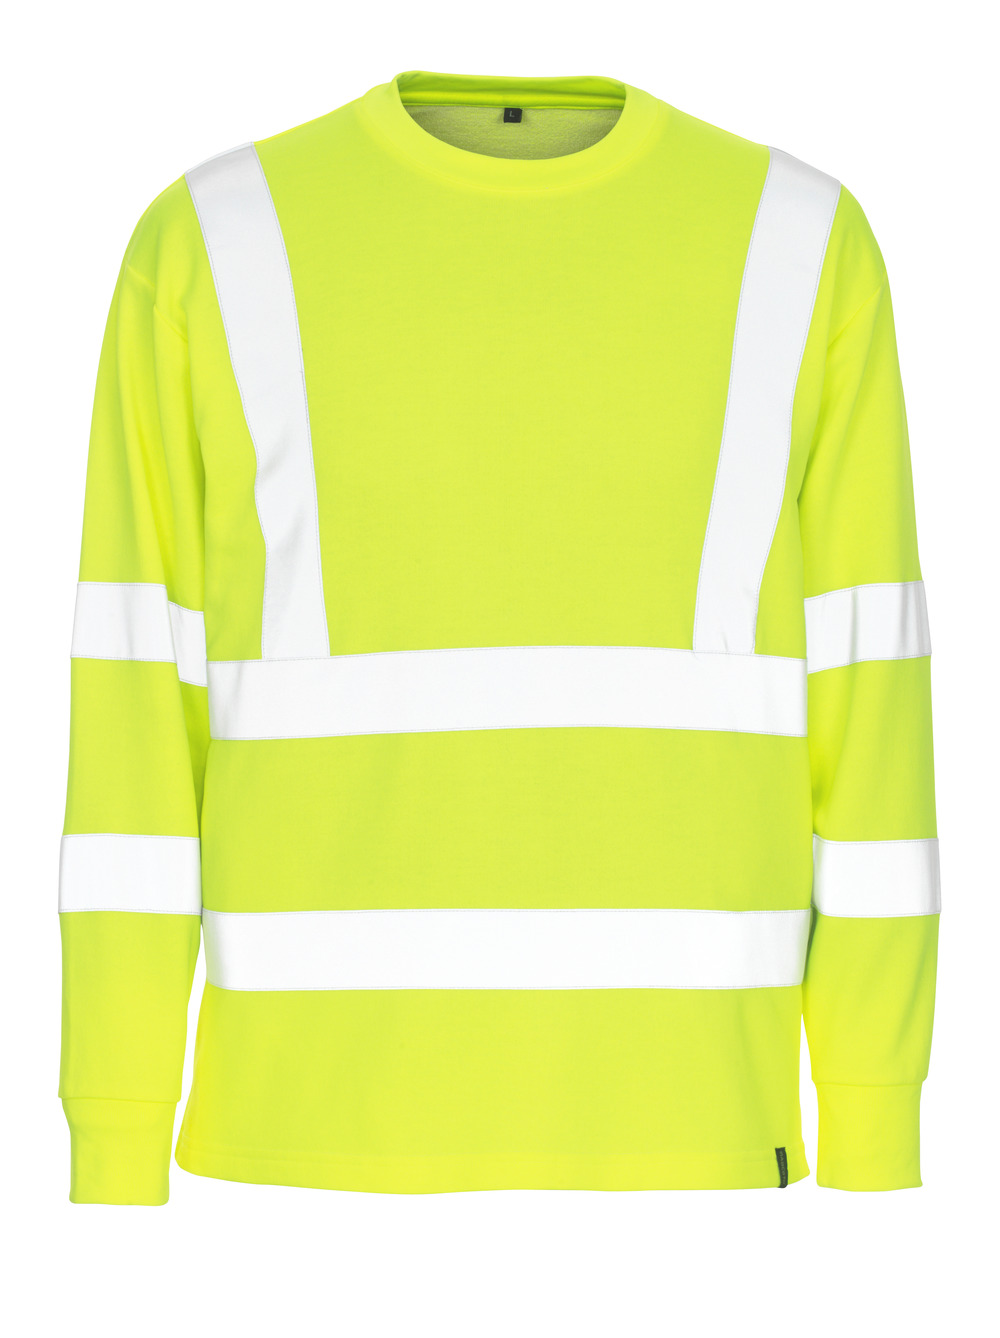 MASCOT-Warnschutz, Warn-Sweatshirt, Melita, 245 g/m², gelb

